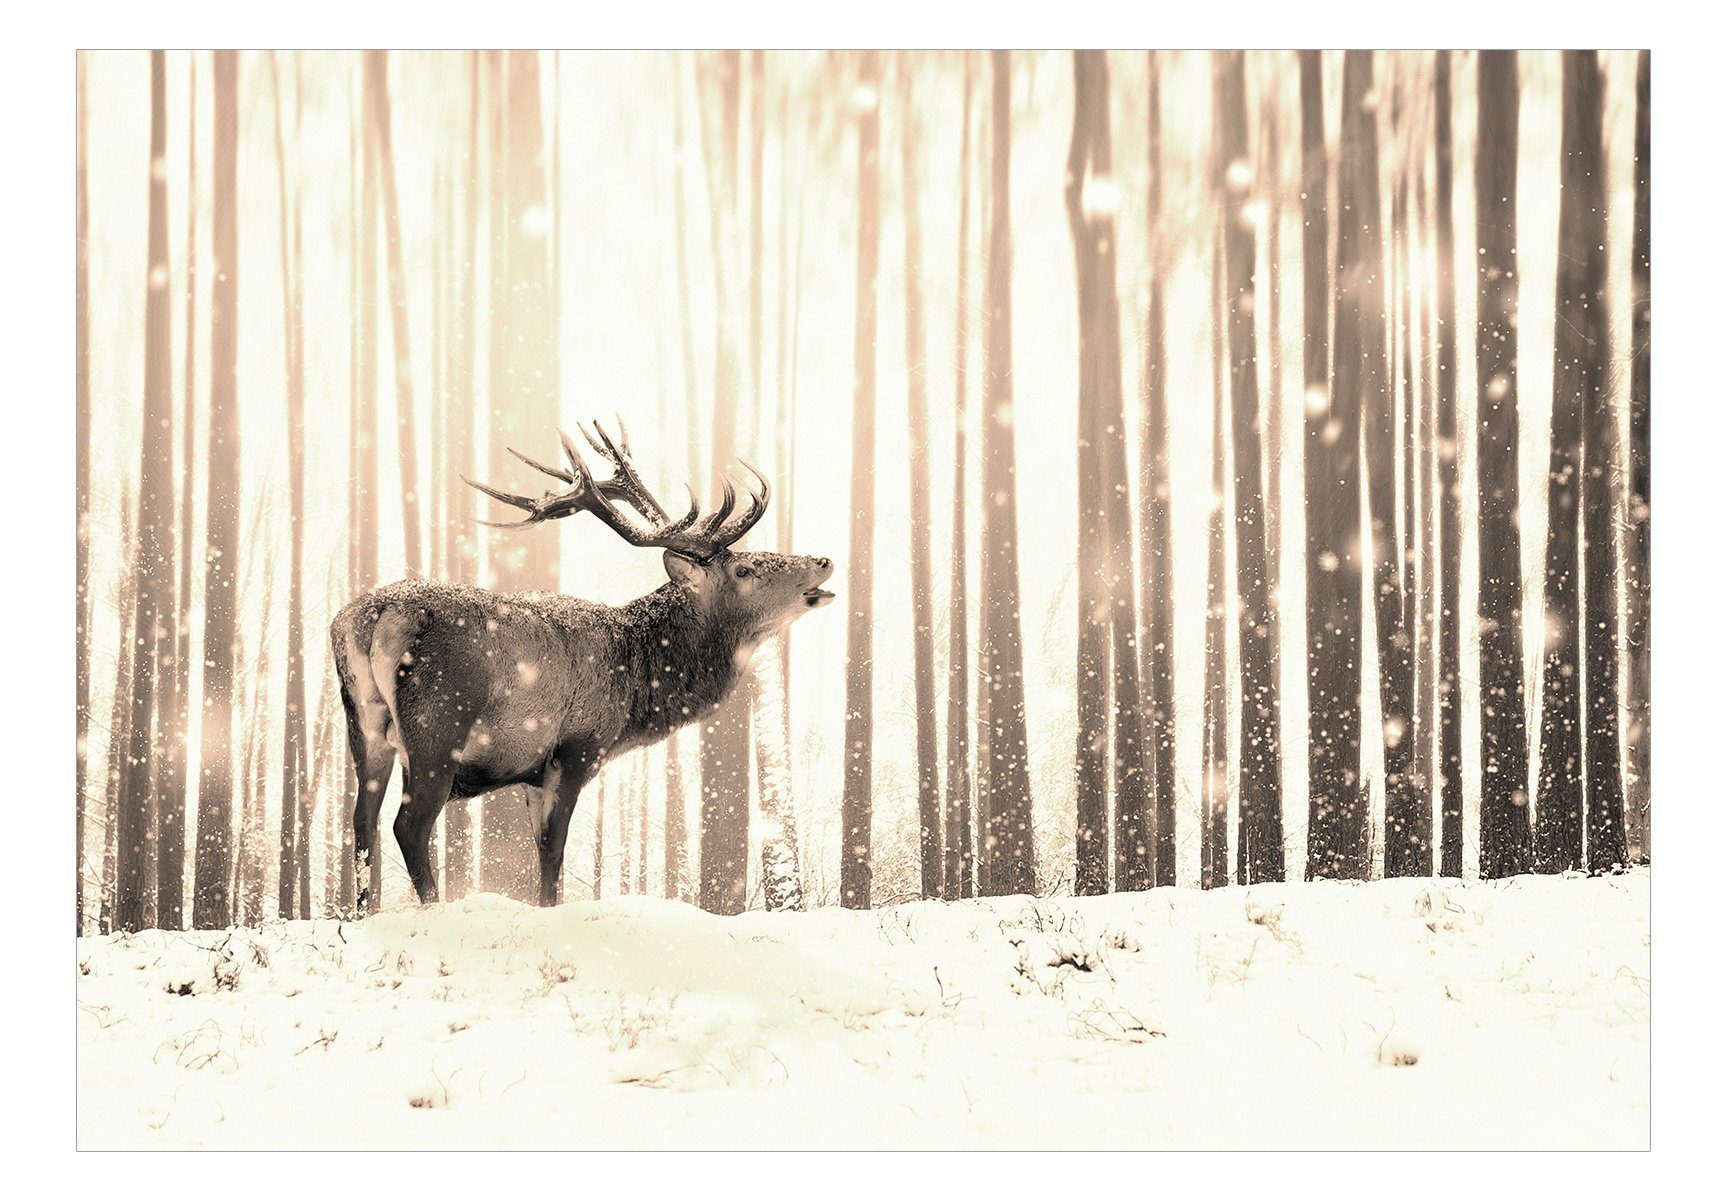 KUNSTLOFT Vliestapete Deer matt, (Sepia) in Design Snow the lichtbeständige m, 0.98x0.7 Tapete